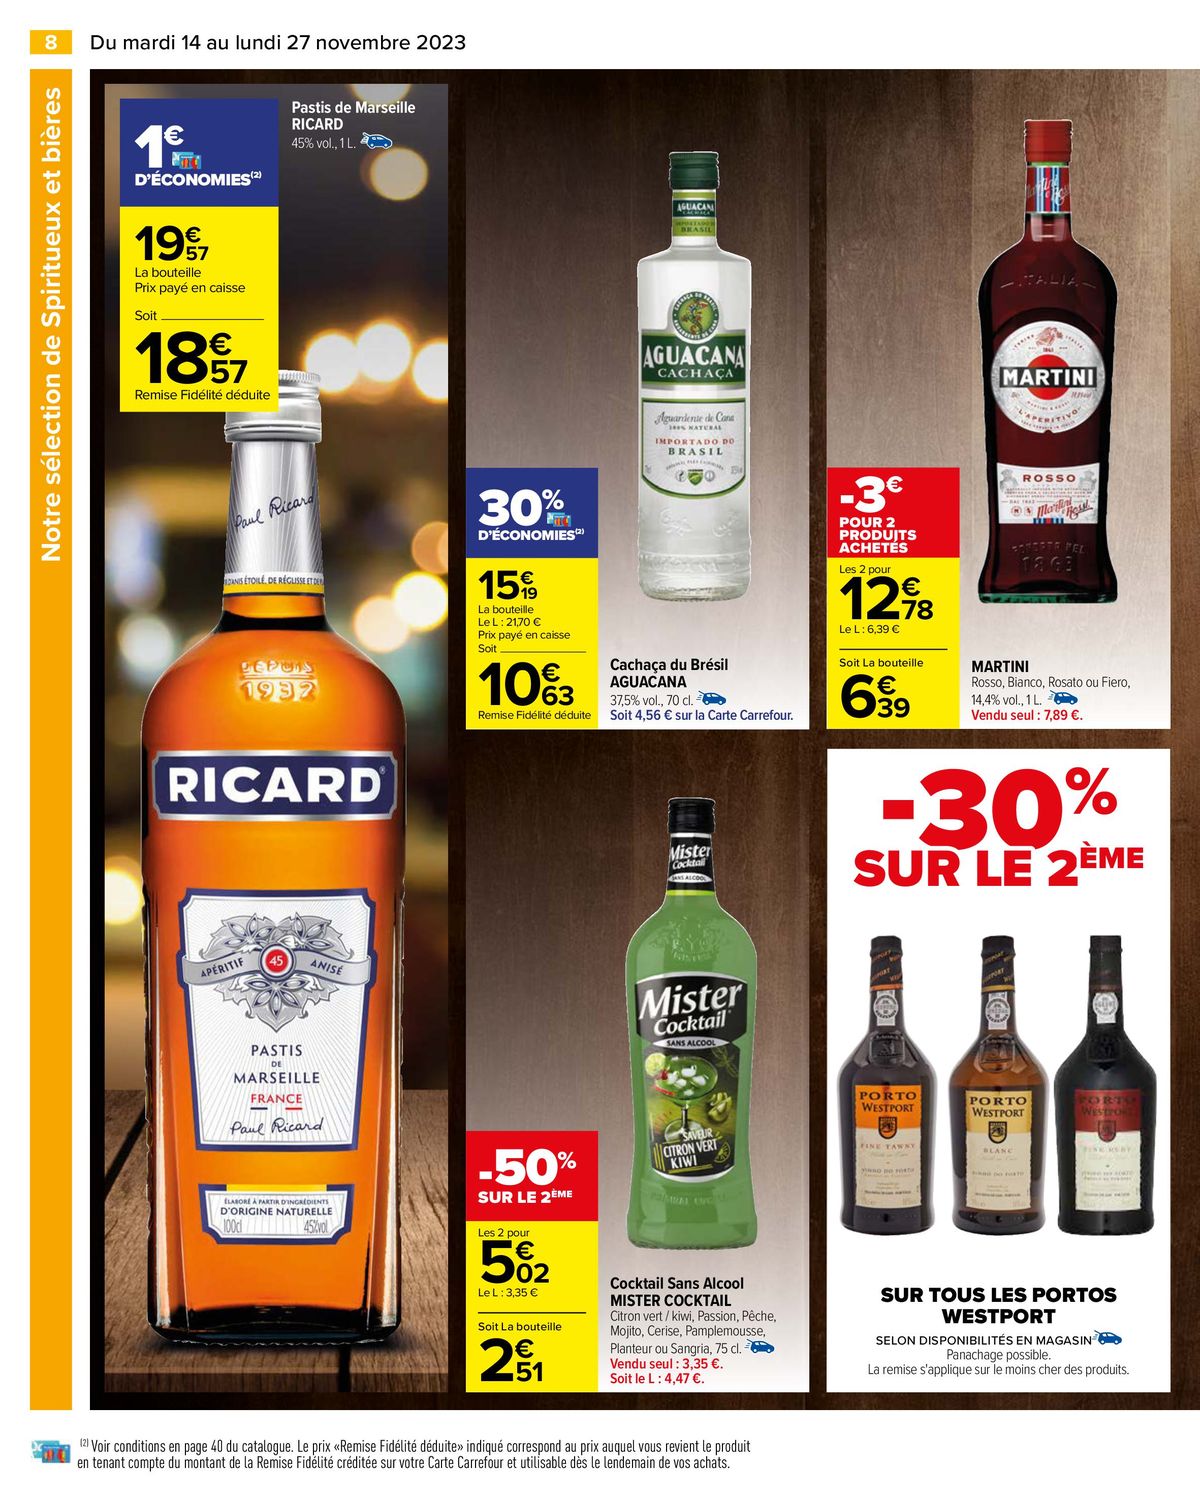 Catalogue Notre sélection Bières & Alcools, page 00010